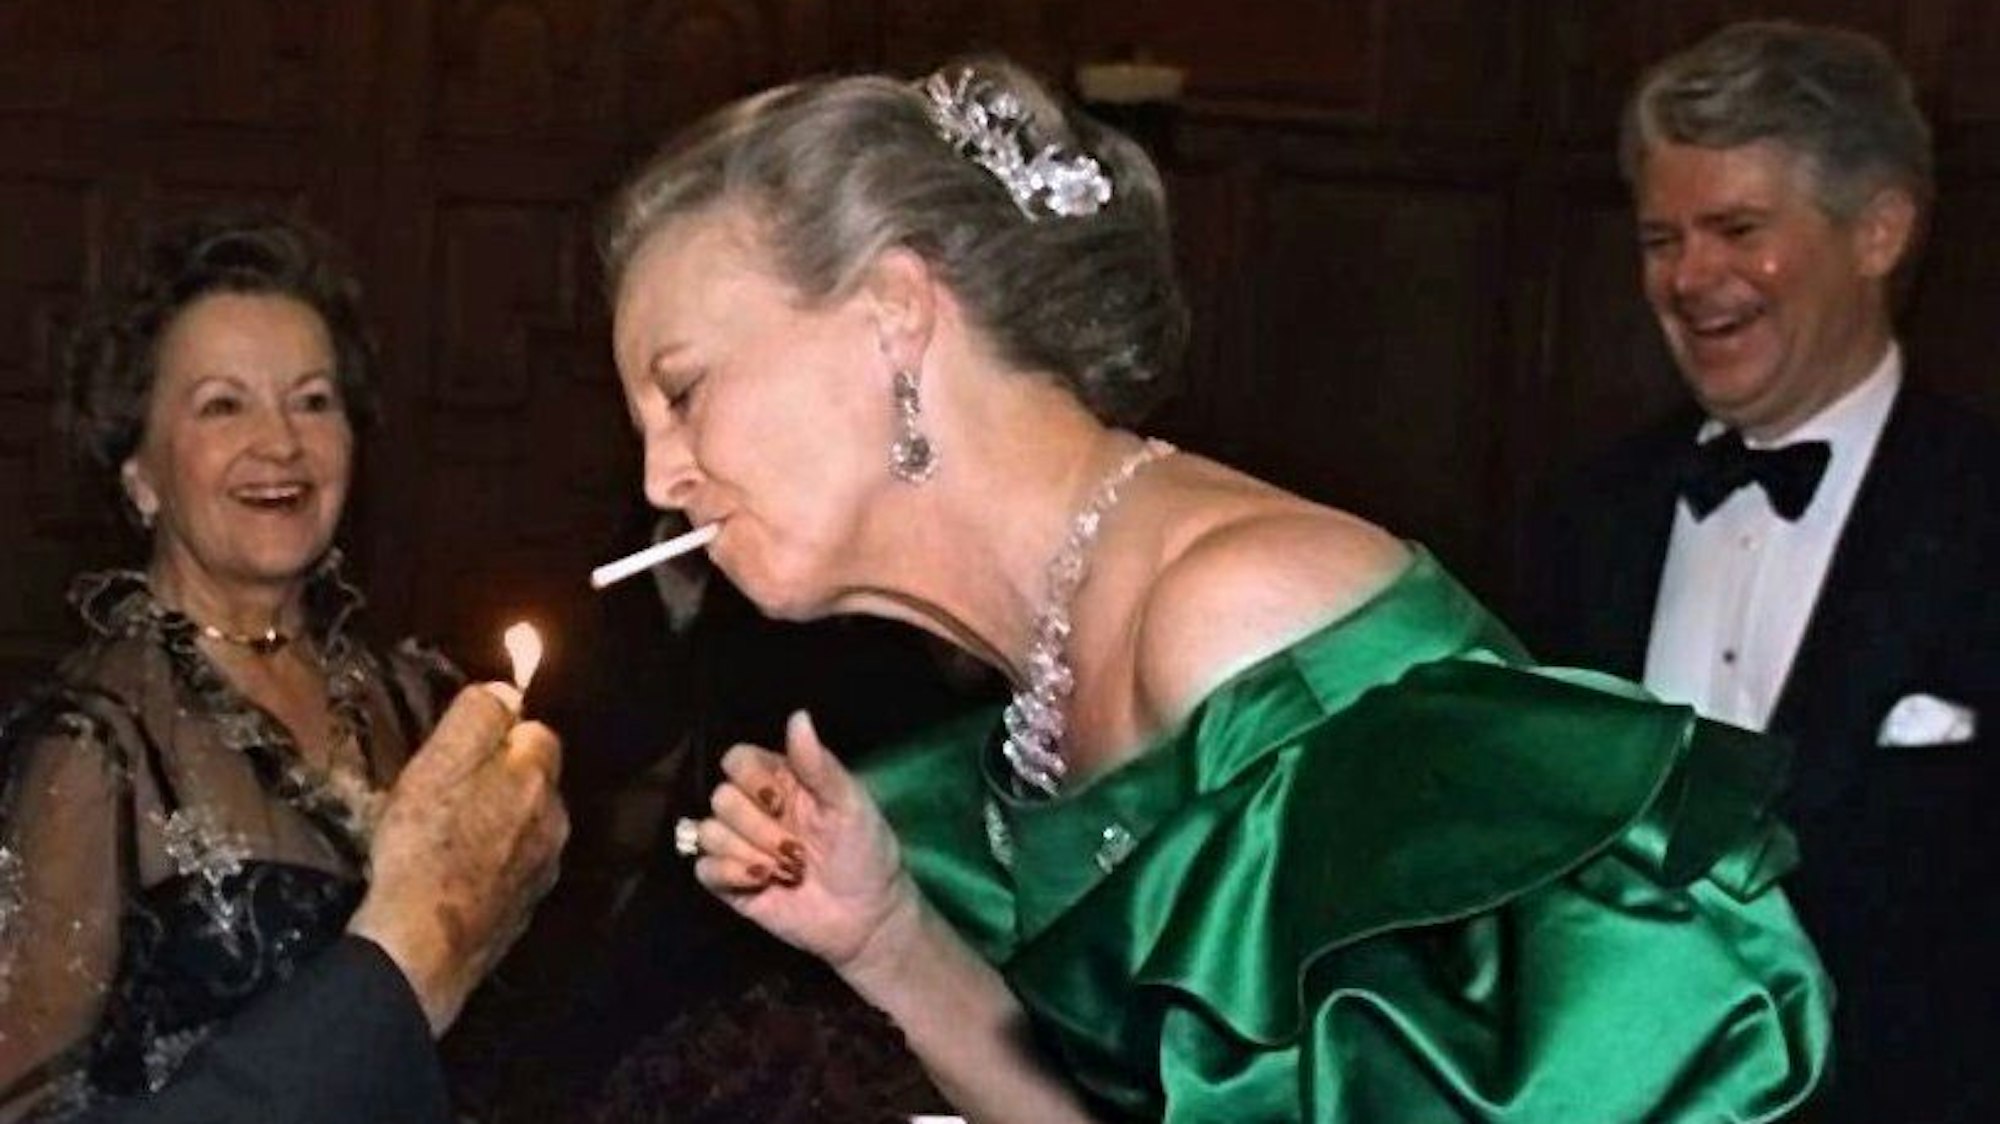 Dänemarks Königin Margrethe II., hier bei einem undatierten Foto, war bekannt fürs Rauchen, bis zu 60 Zigaretten soll sie am Tag geraucht haben. Nun ist damit offenbar Schluss. (Archivbild)